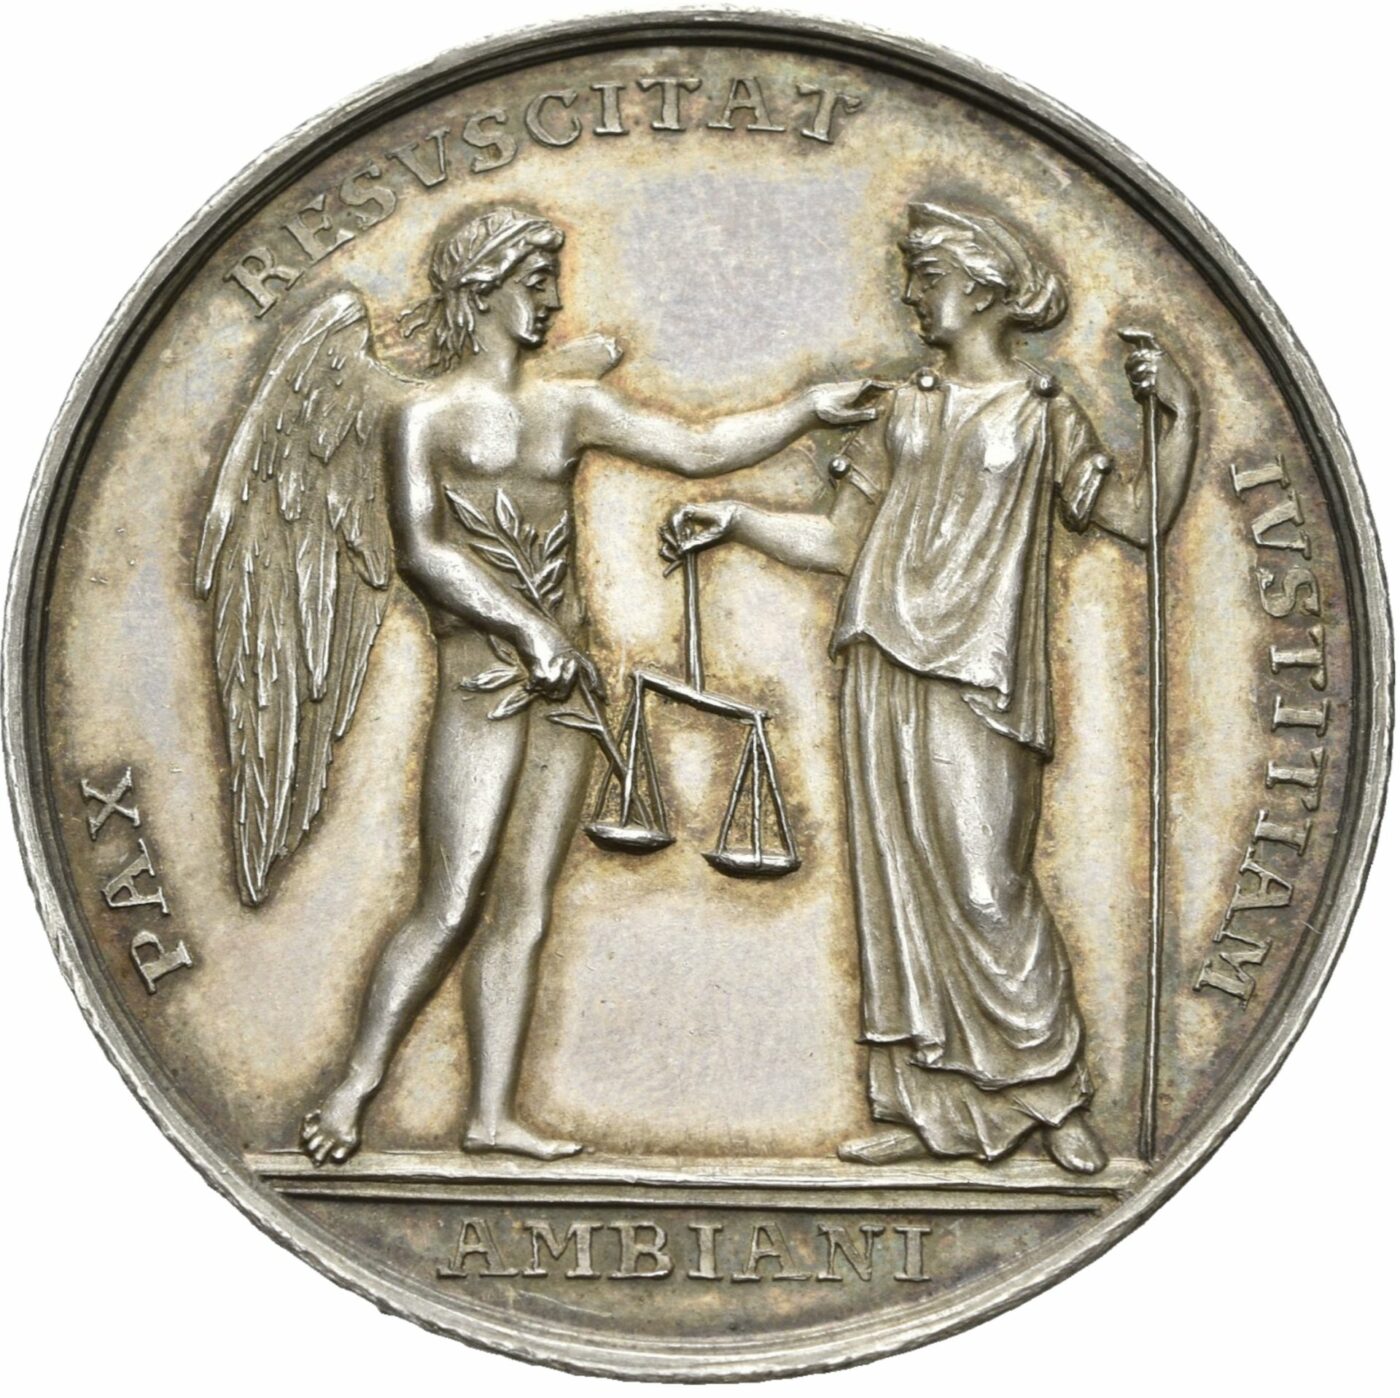 Abraham Abramson, Medaille auf den Frieden von Amiens, VS, 1802, Silber, ex Slg. Thomas Würtenberger, © Staatliche Museen zu Berlin, Münzkabinett